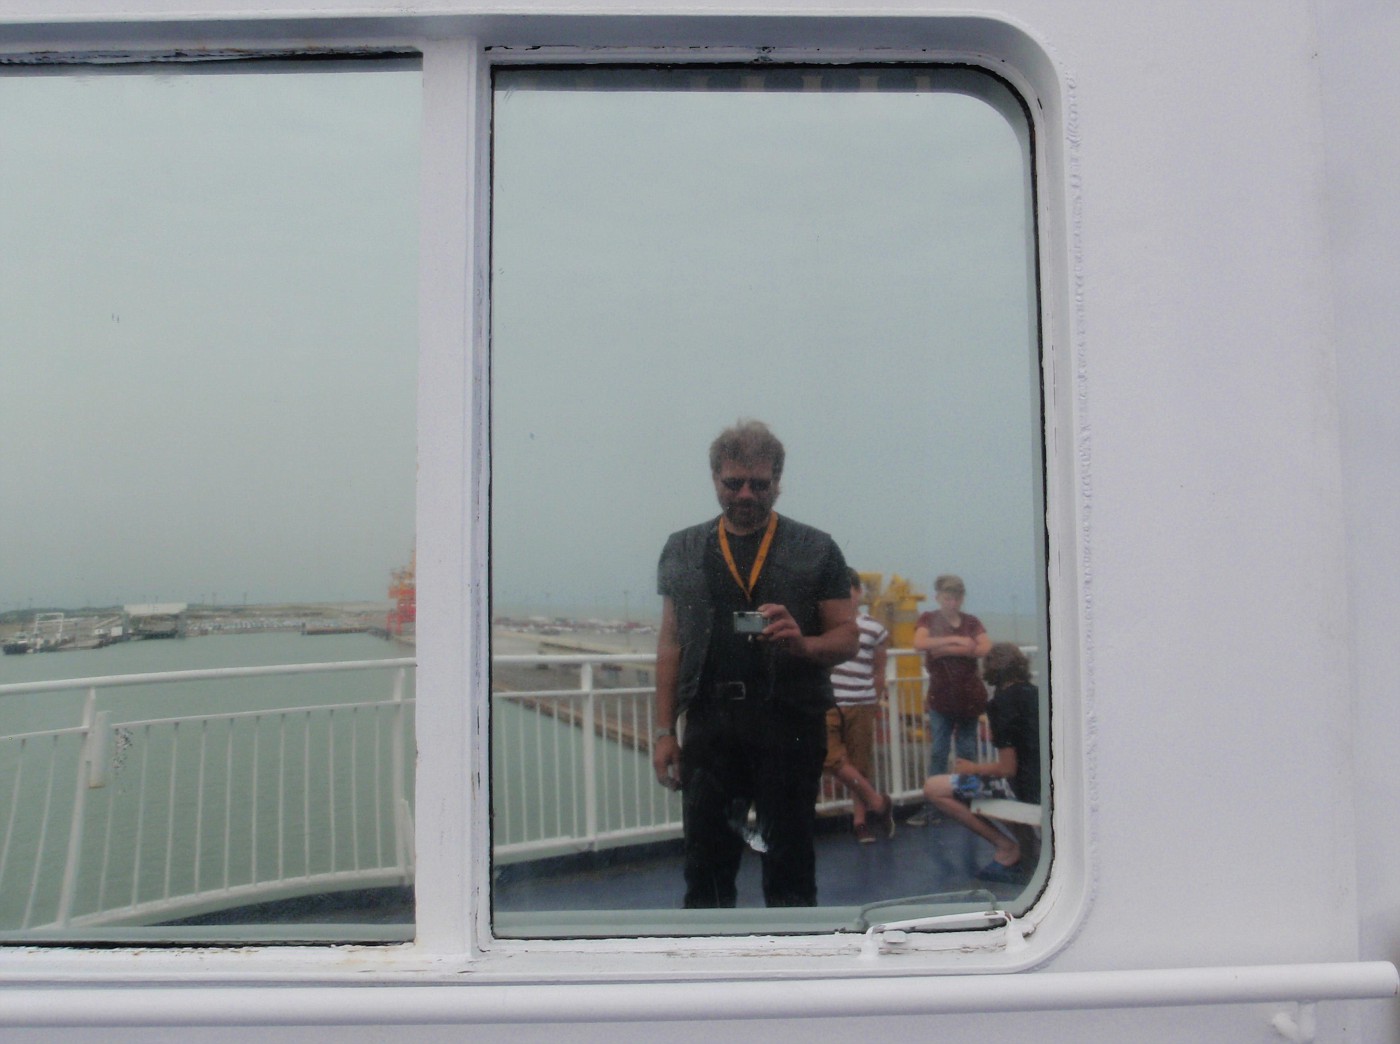 On the ferry Calais-Dover